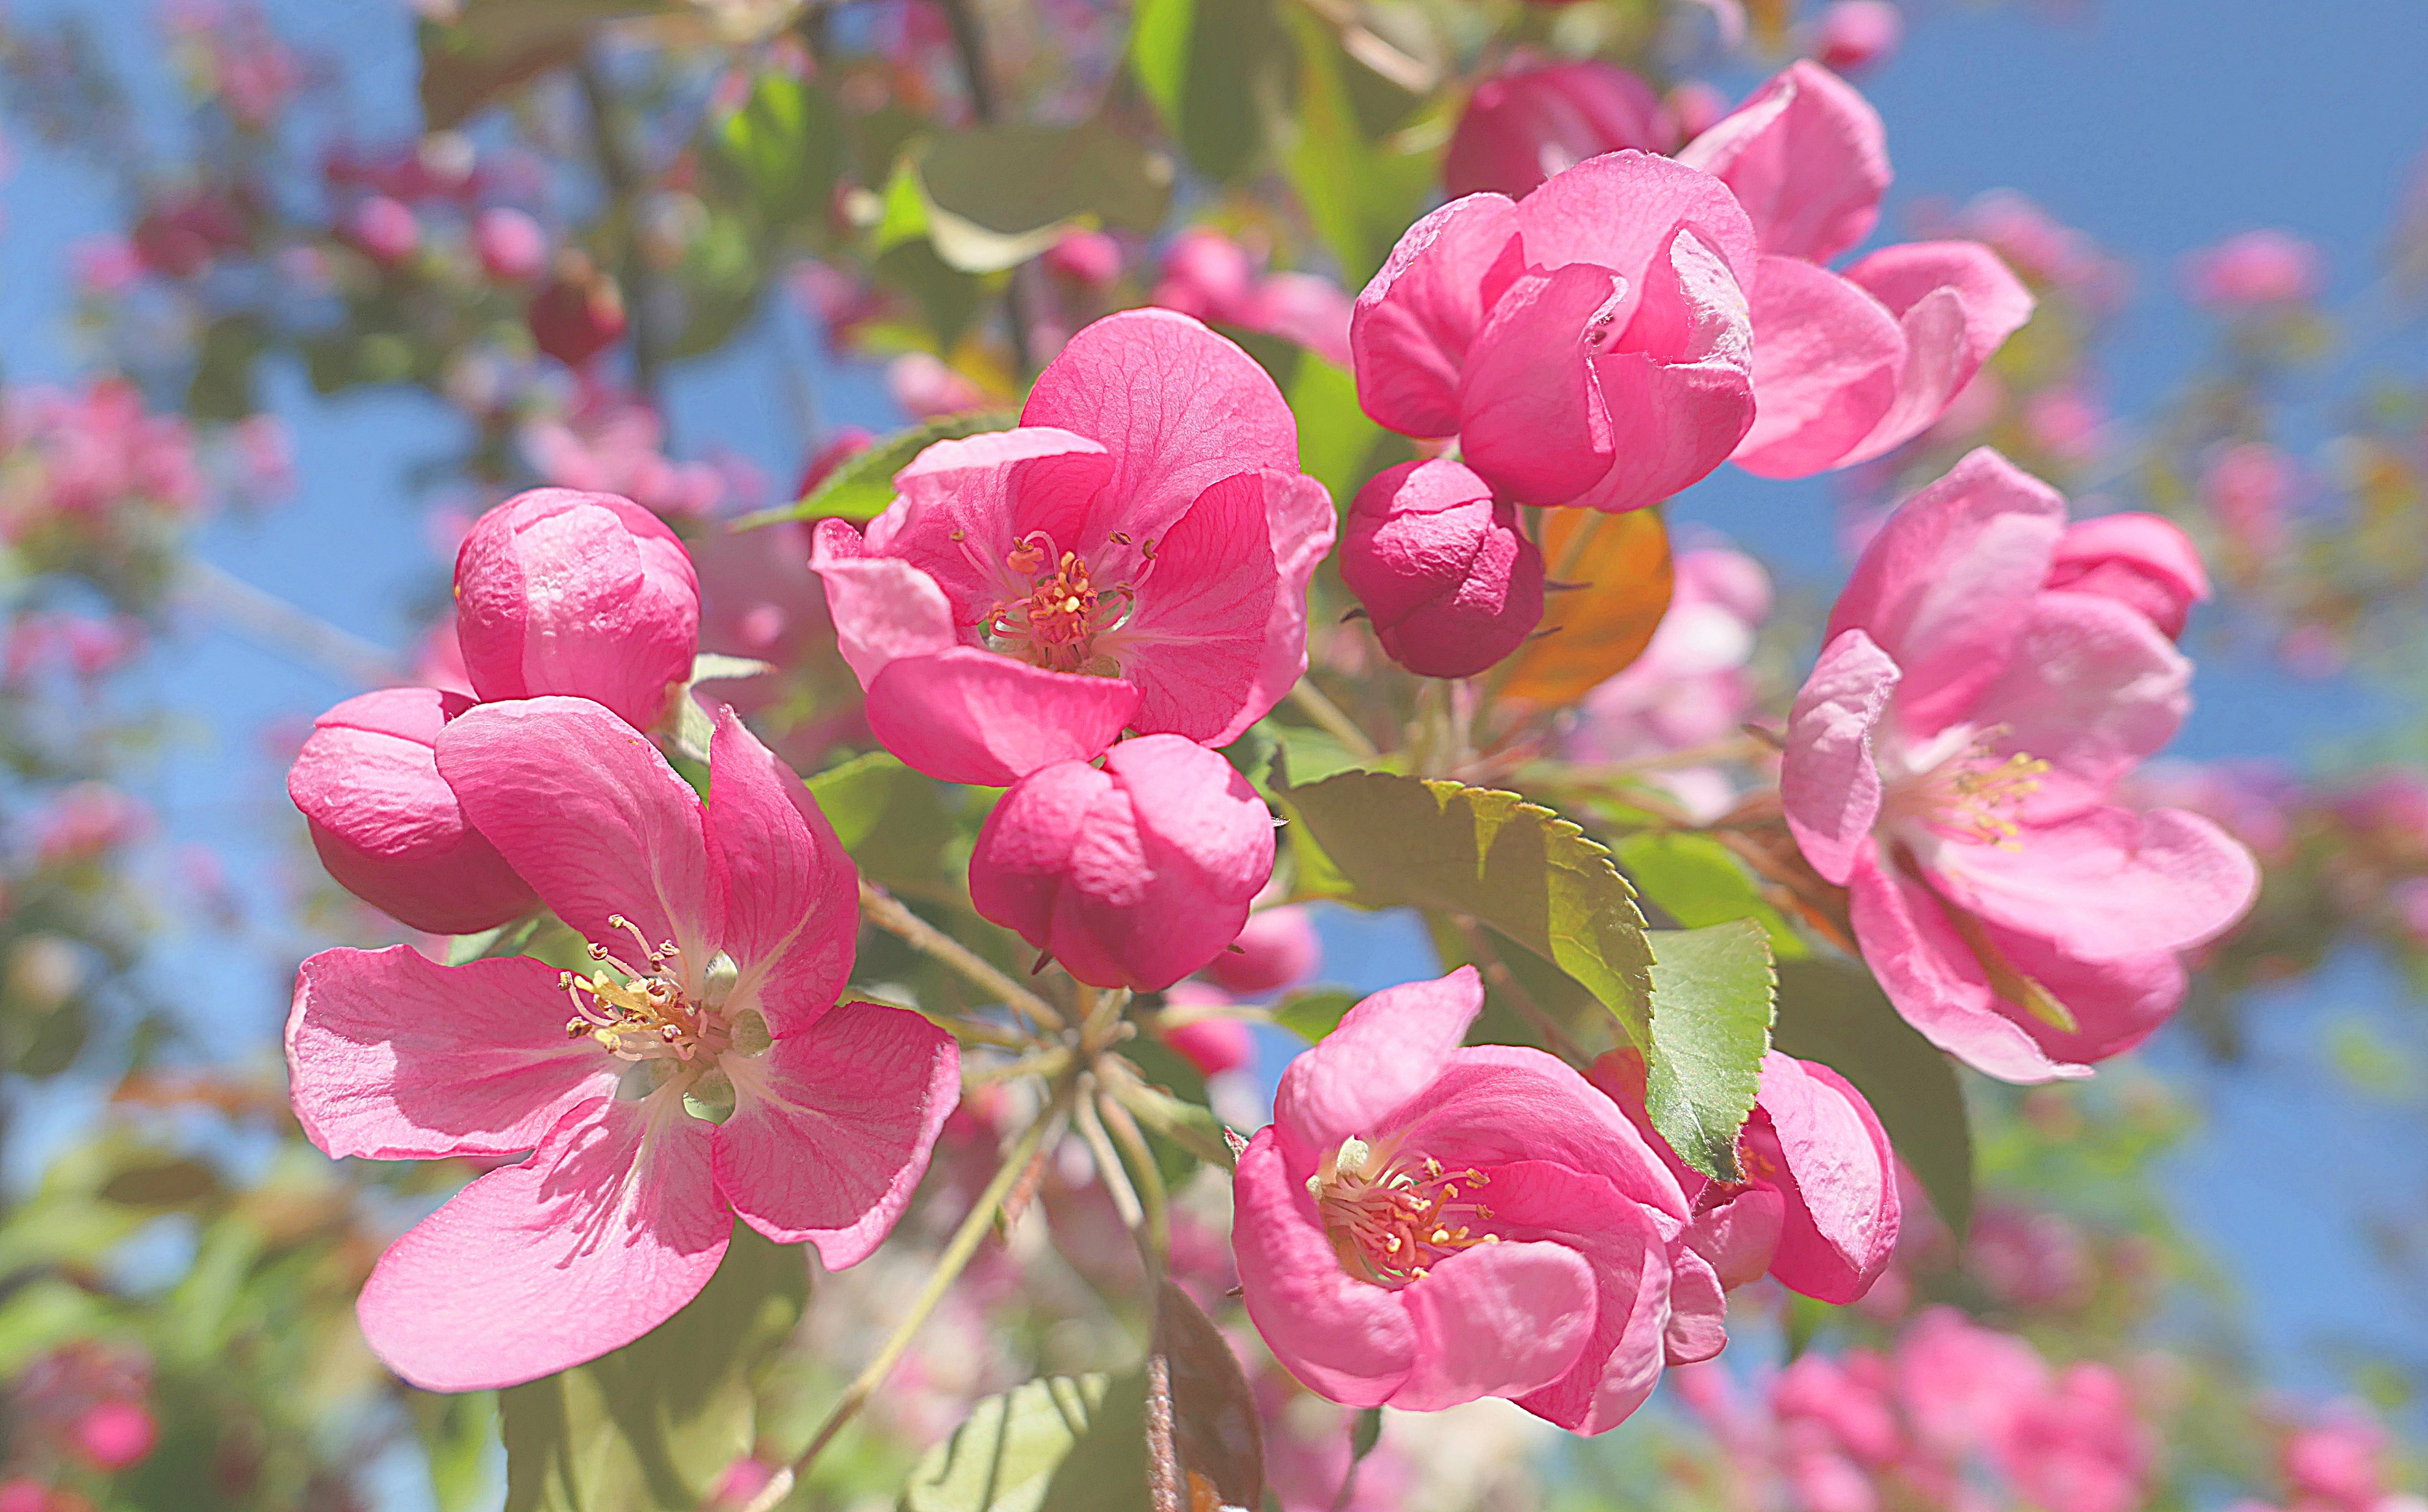 Цветки китайской яблони, растущей возле ул. Удальцова. Фото Морошкина В.В.